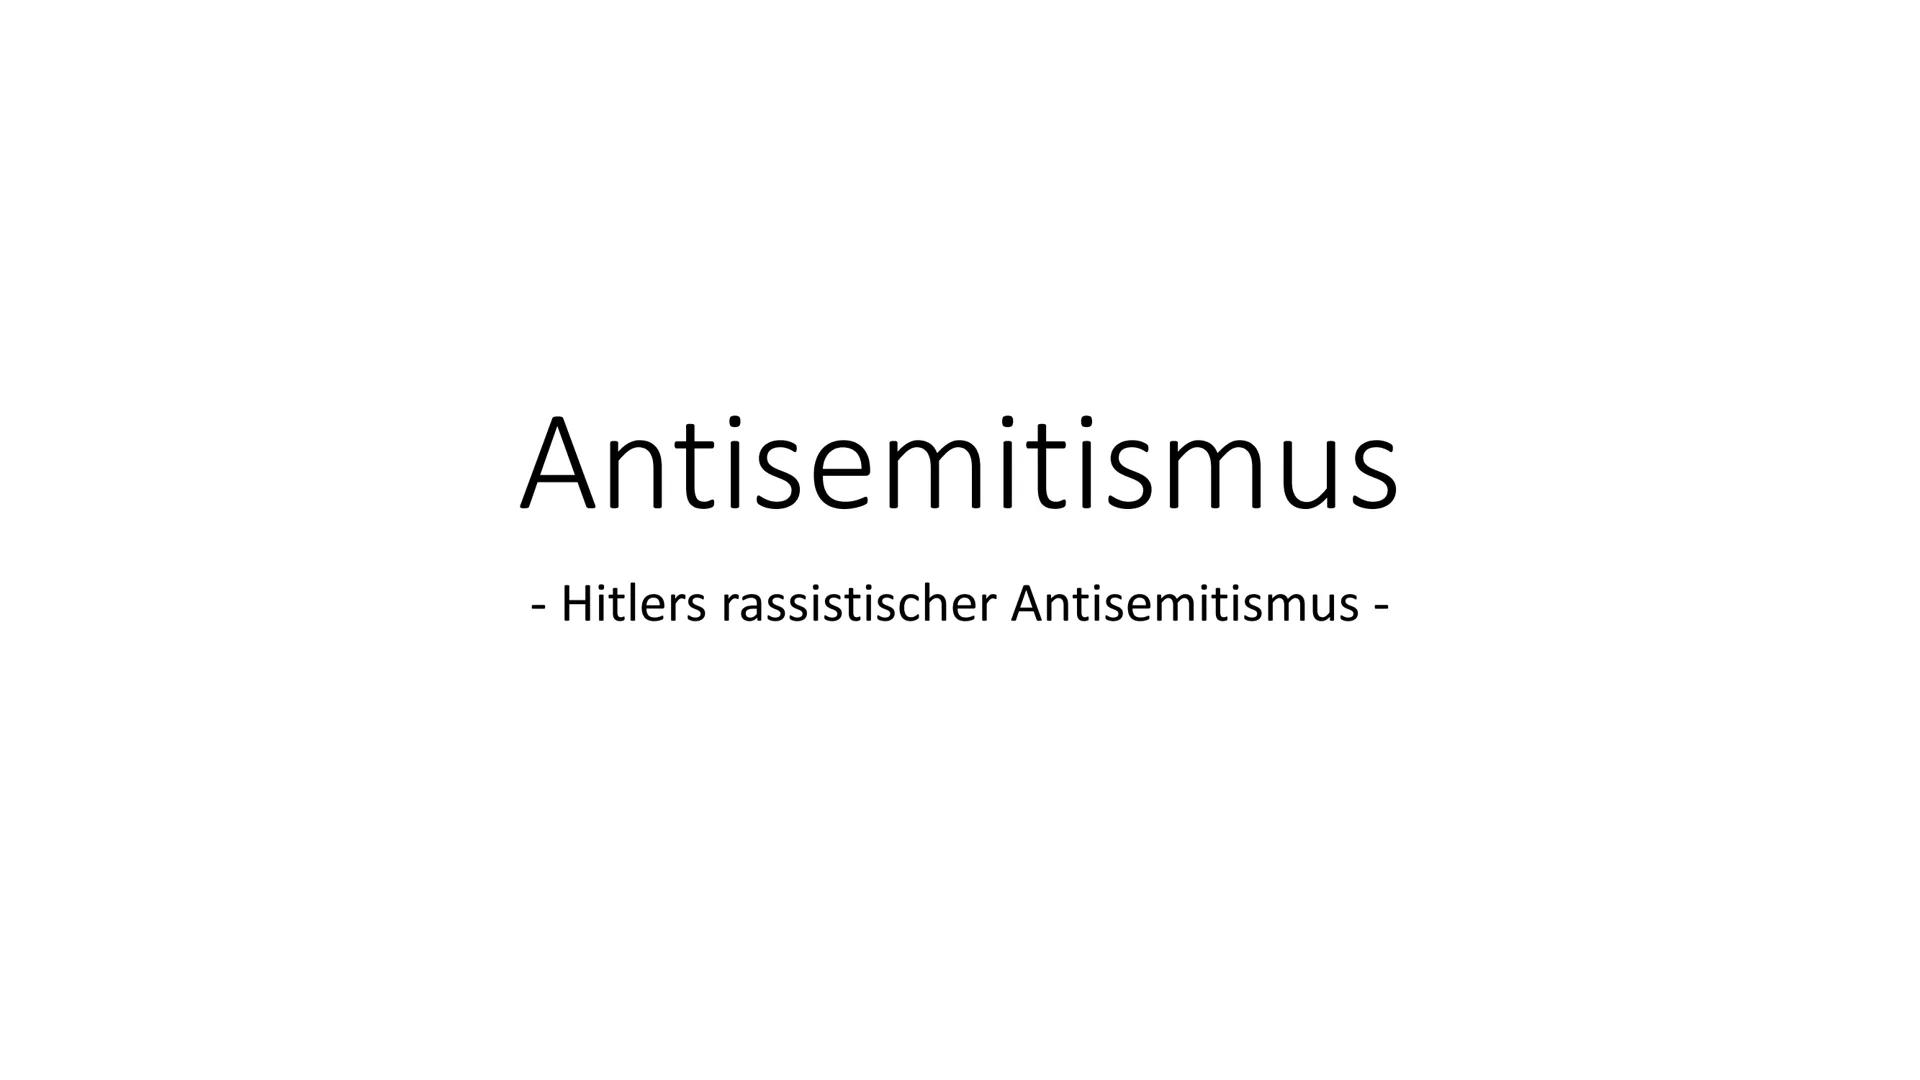 Antisemitismus
-
Hitlers rassistischer Antisemitismus - Definition und Allgemeines
Def.: Antisemitismus beschreibt die durch
Nationalismus, 